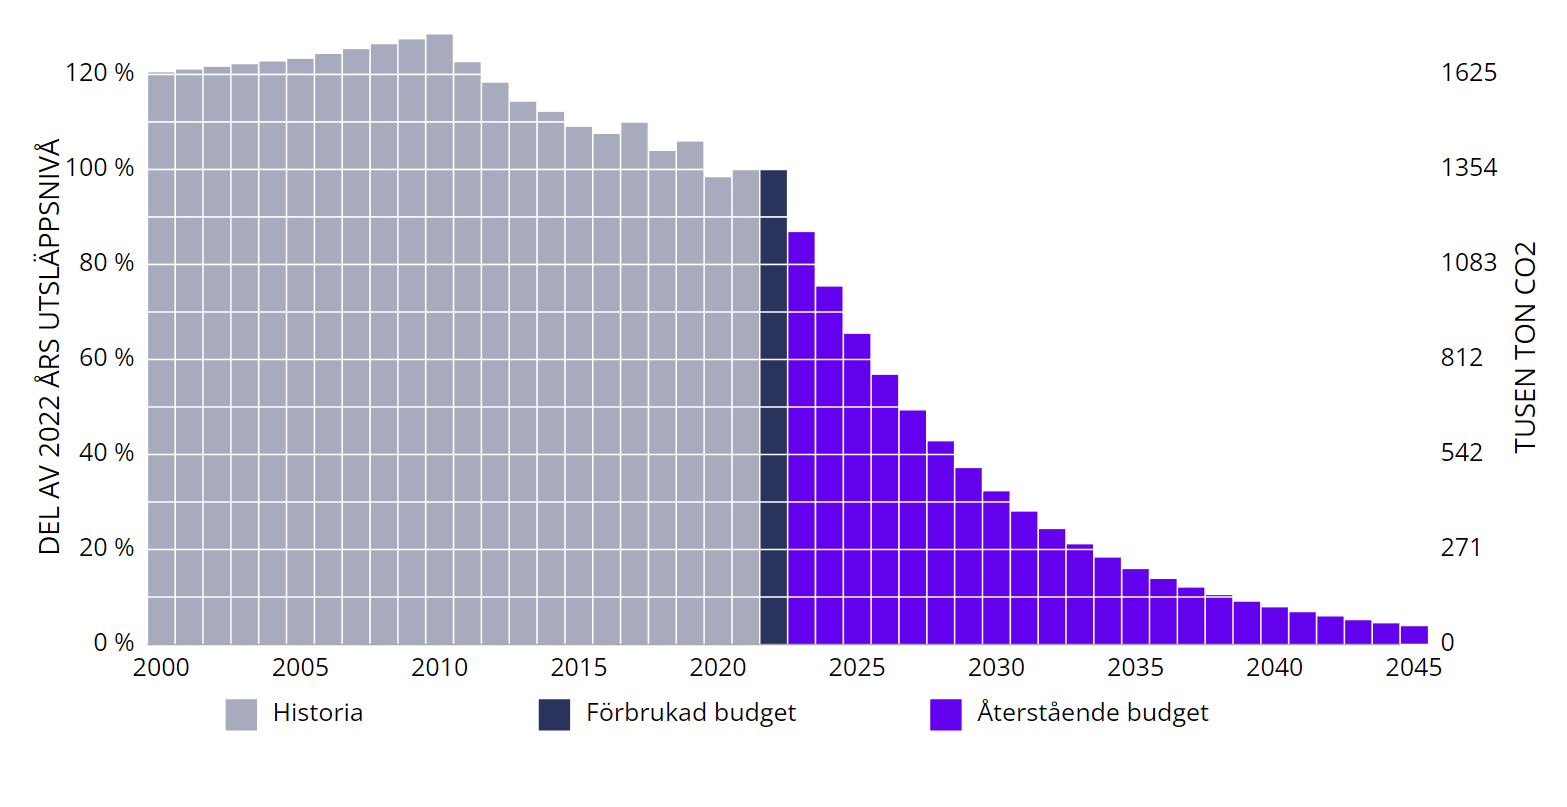 Diagrammet visar historiska utsläpp (2021 och 2022 är preliminära värden), den hittills förbrukade budgeten samt återstående budget för Jönköpings län.

Utsläppen föreslås minska med en konstant del av föregående års utsläpp fram till 2045. Den vänstra Y-axeln visar utsläpp som procent av 2022. Den högra y-axeln visar utsläppen i ton.